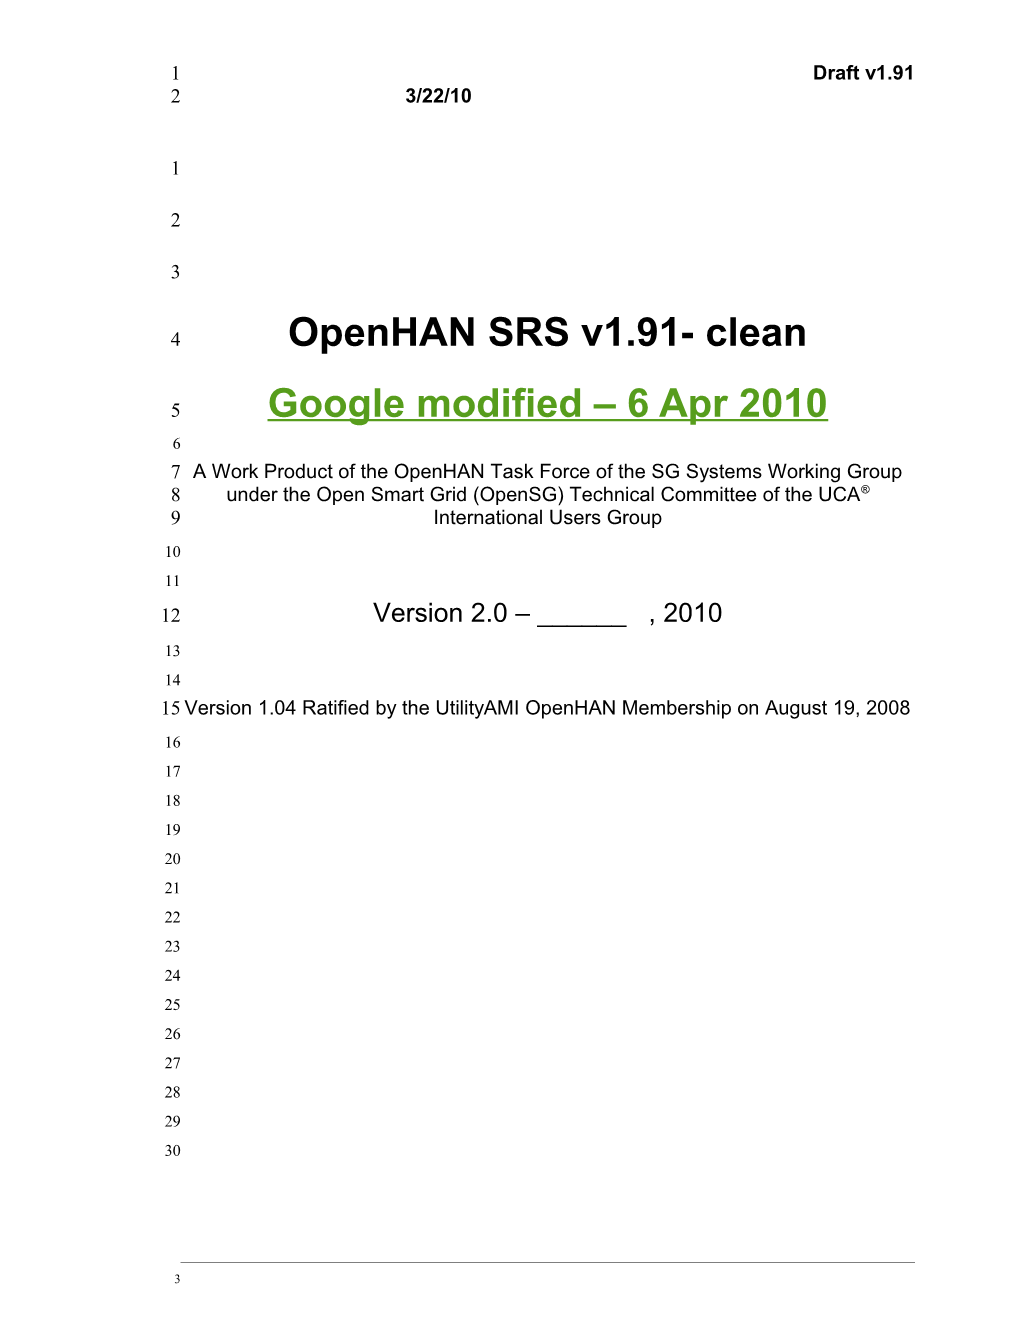 Openhan SRS V1.91- Clean